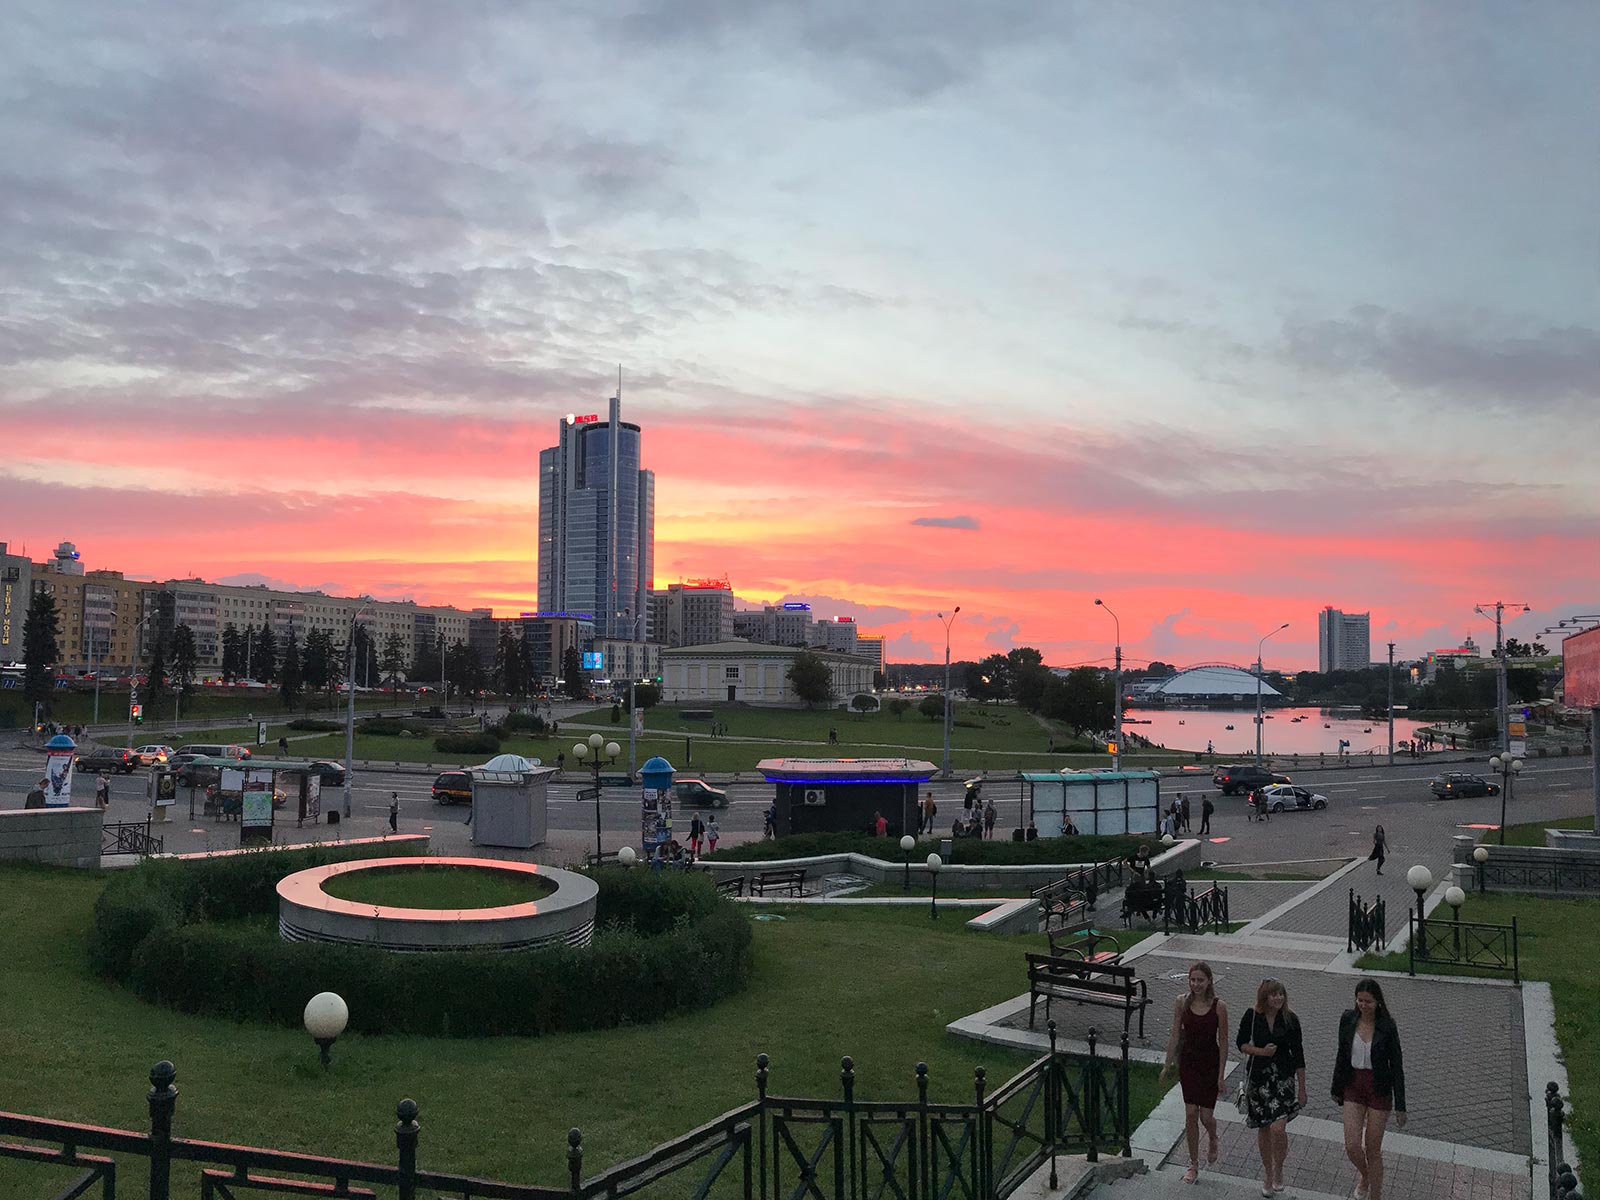 Sunset by the park in Minsk, Belarus. Minsk & Warsaw